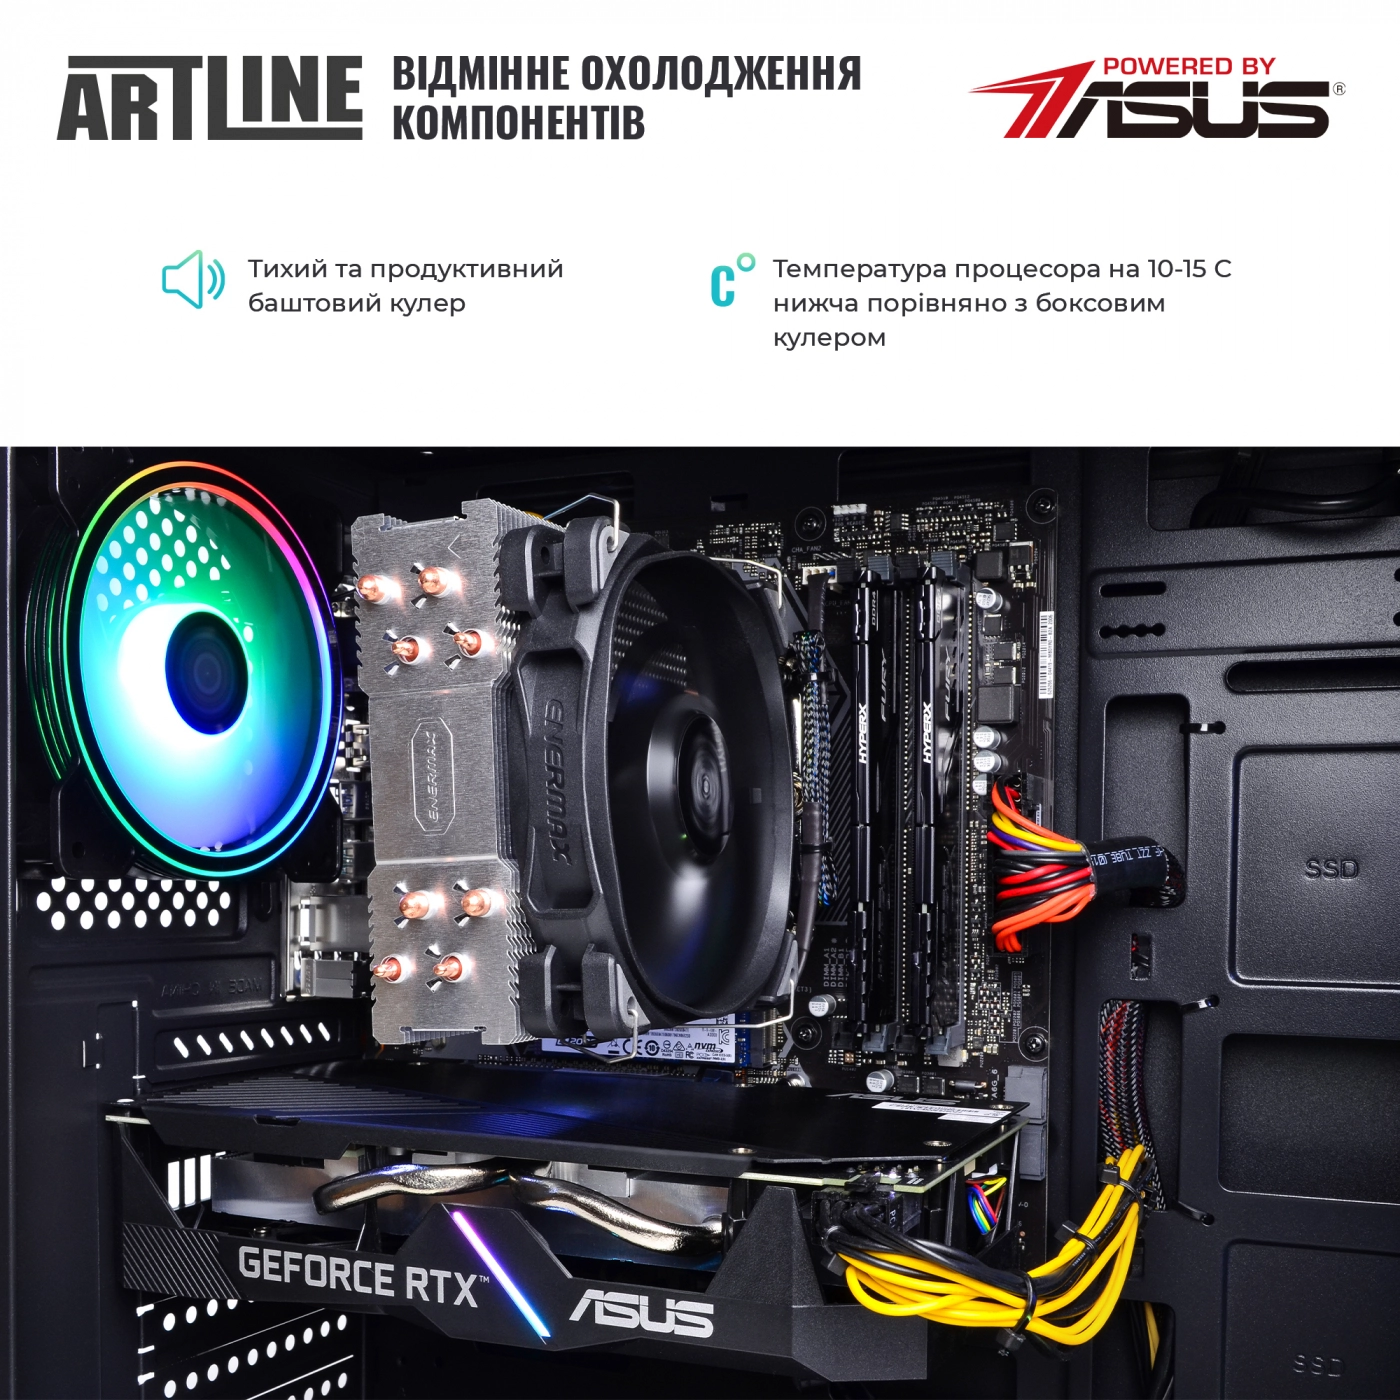 Купить Компьютер ARTLINE Gaming X68v20 - фото 7